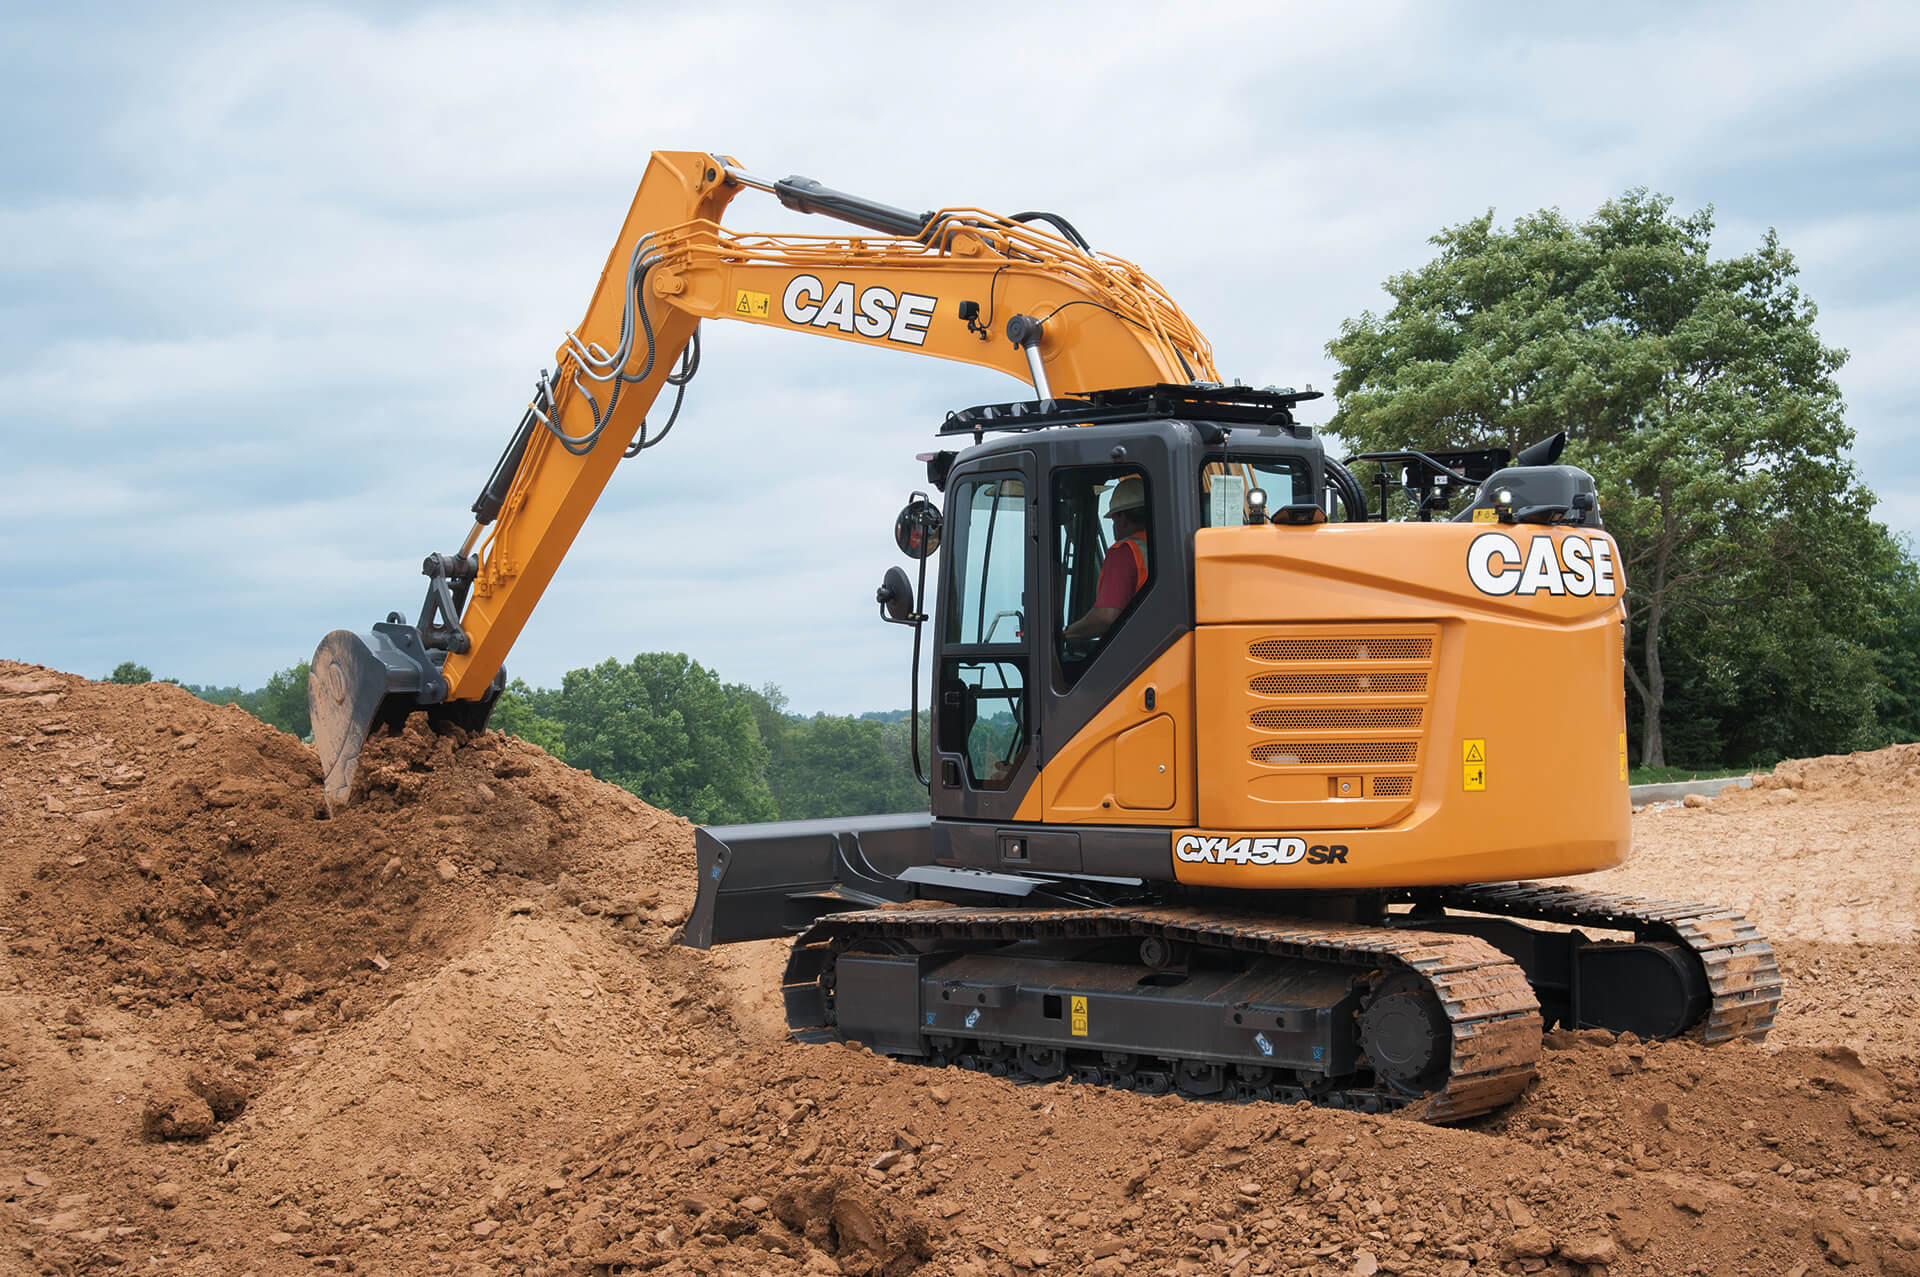 CASE CX145D SR Excavators | CASE Construction Equipment